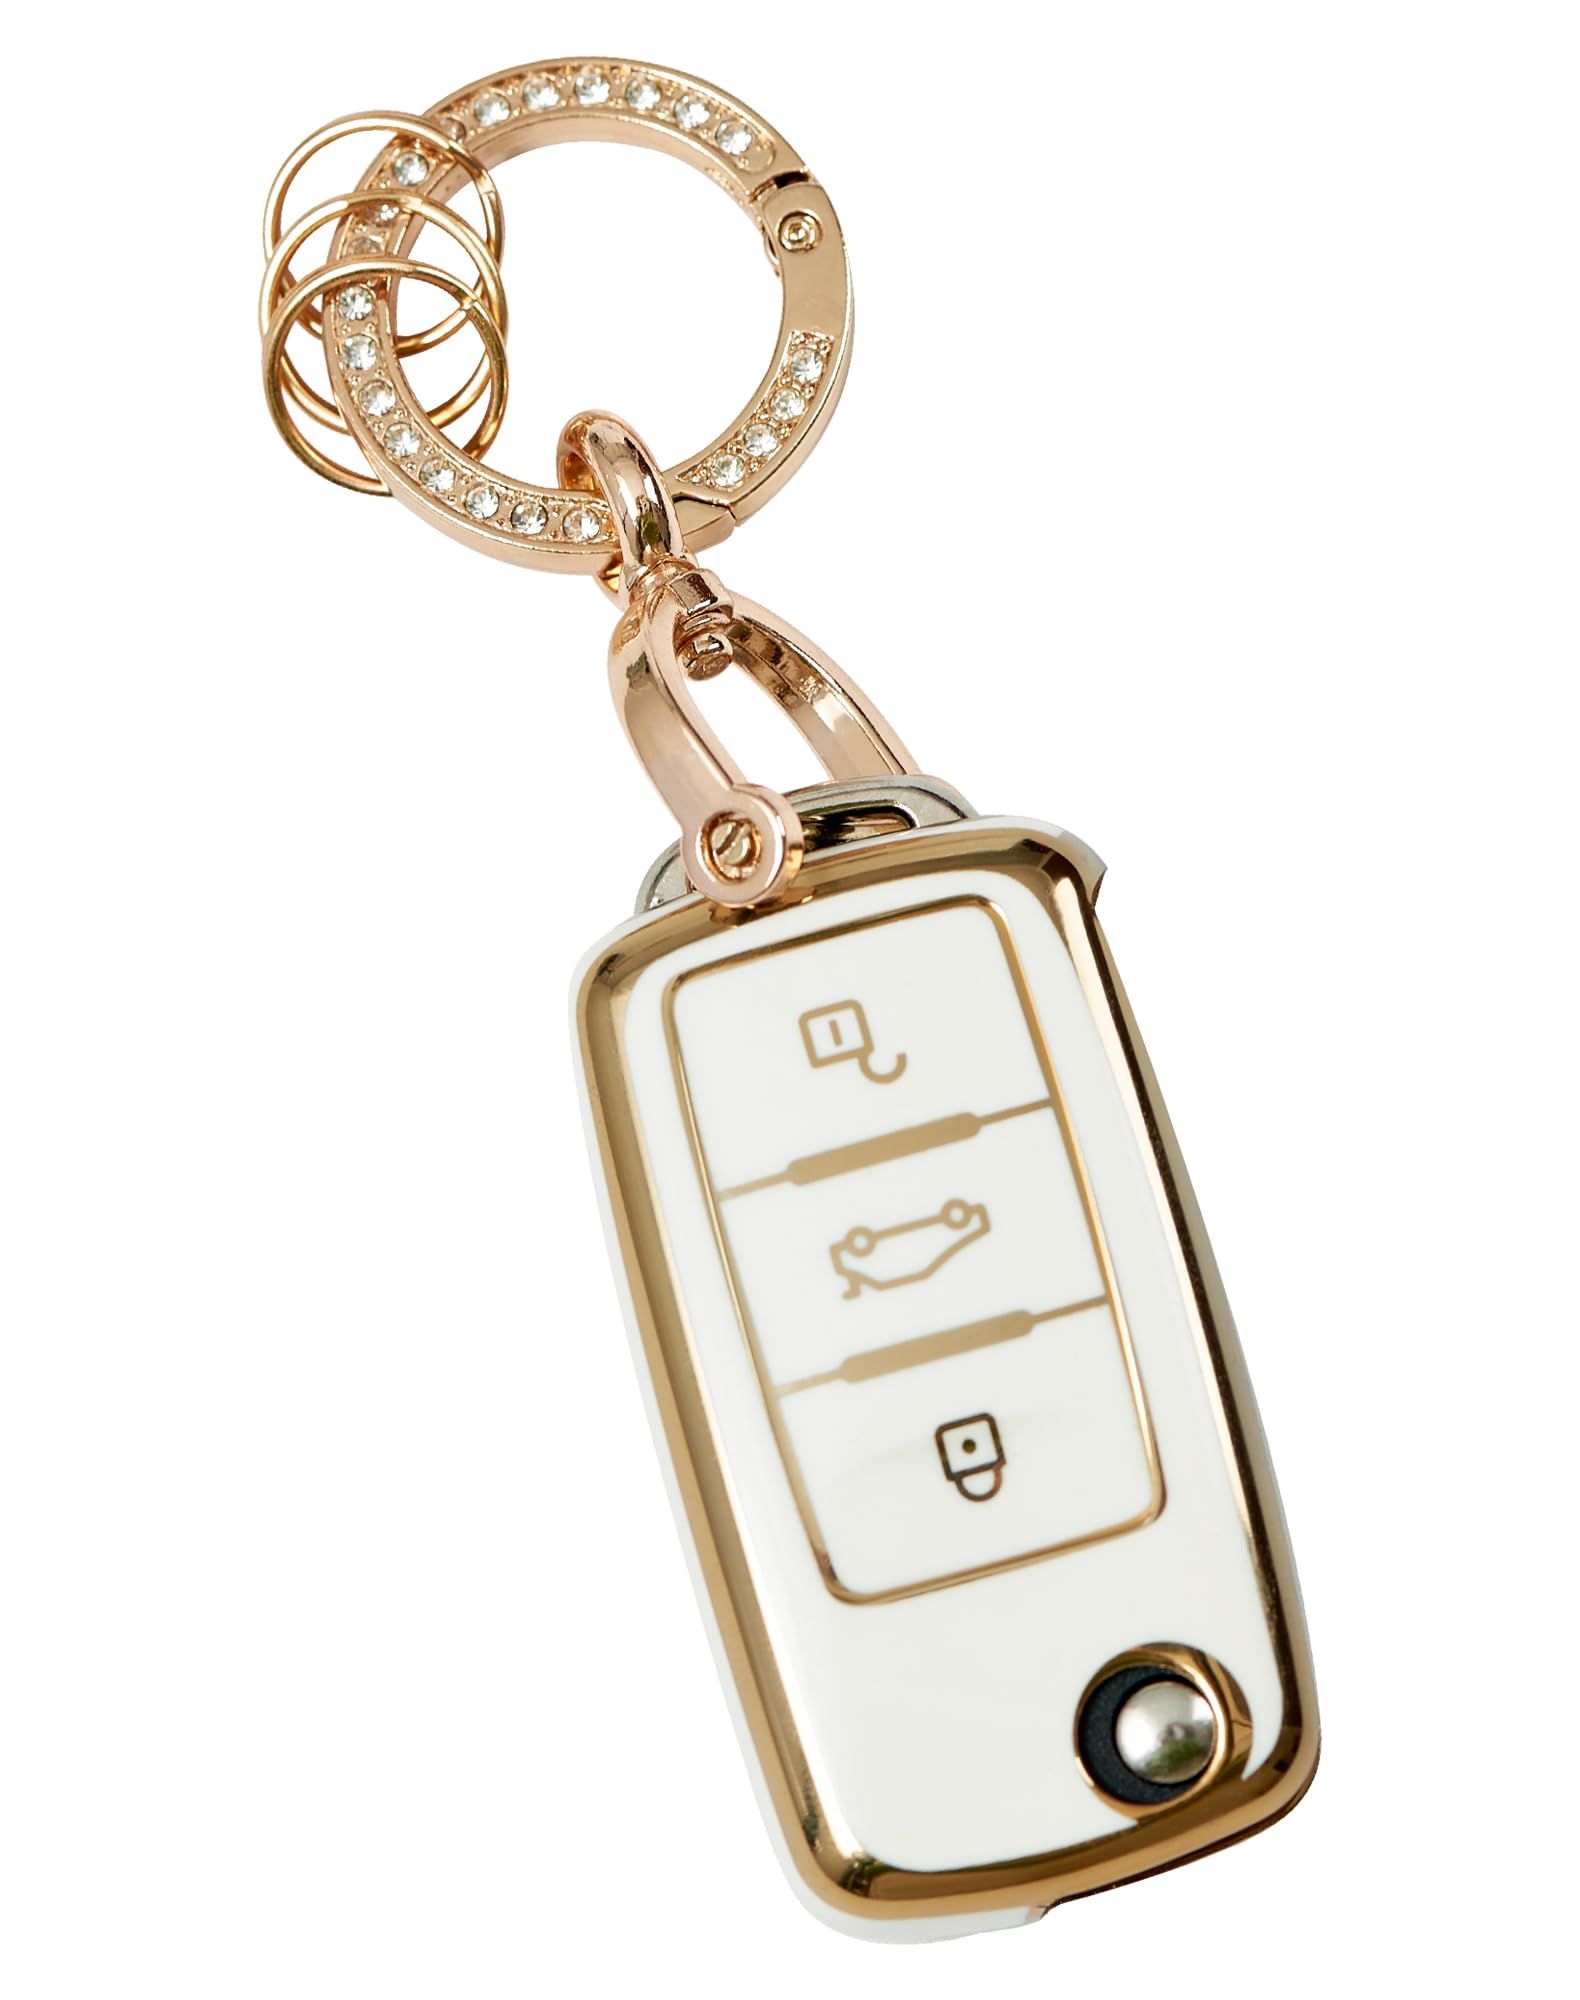 NETONDA Autoschlüssel Hülle für VW, 3 Tasten Schlüsselschutz mit Schlüsselanhänger Kompatibel mit Volkswagen Polo Golf 4/5/6/7 Tiguan Passat Multivan T5 Caddy Jetta Bora Superb Skoda - Weiß + Gold von NETONDA